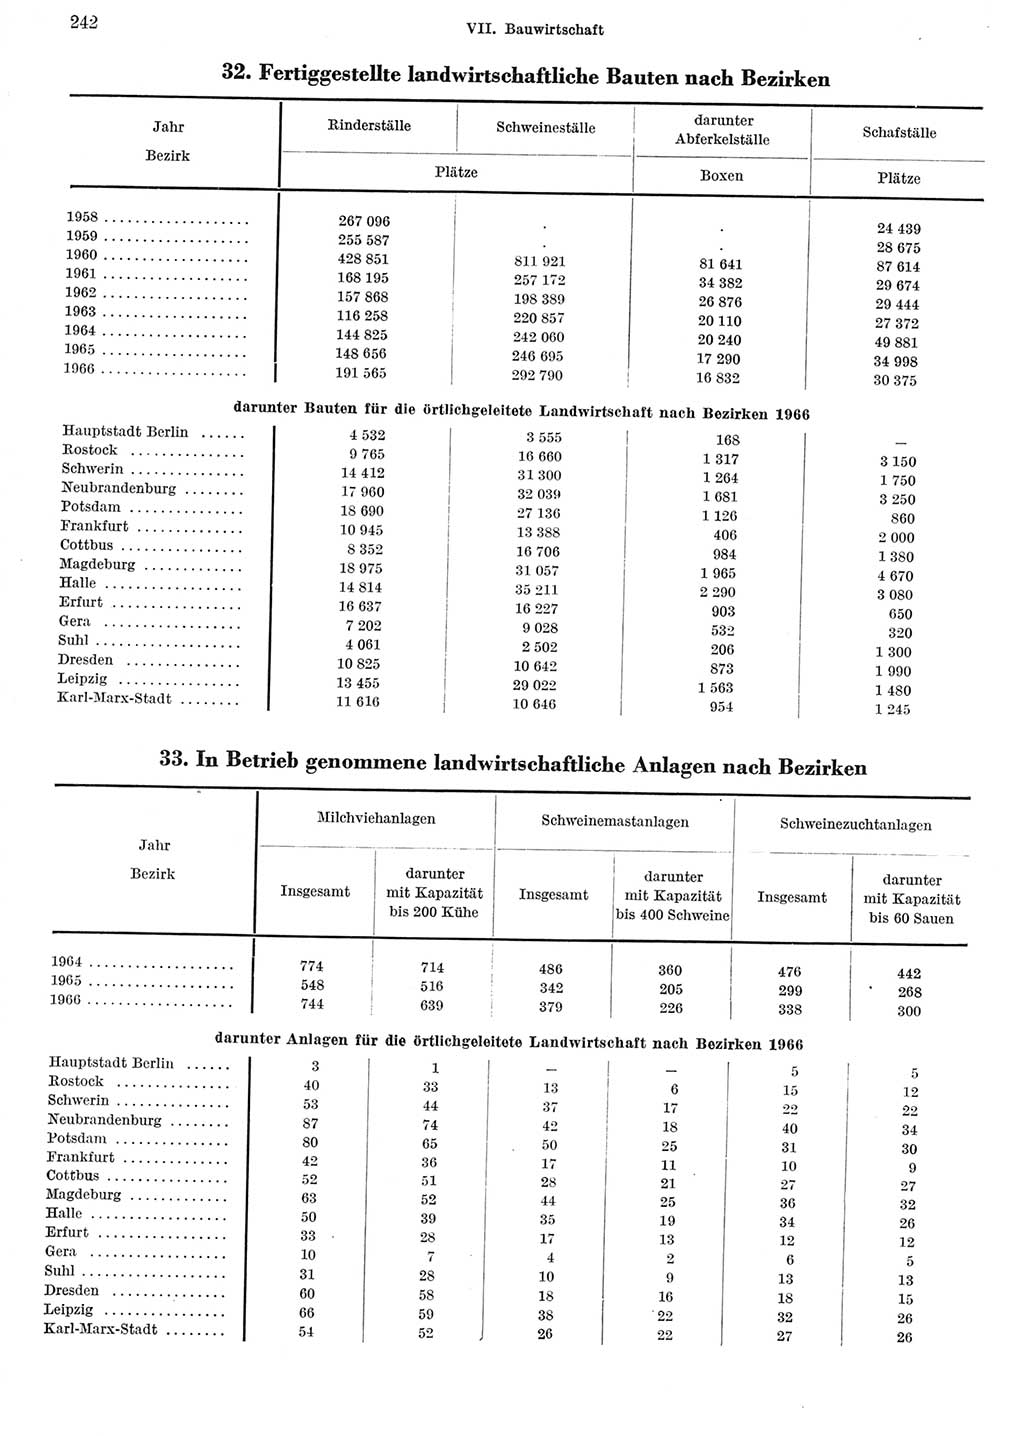 Statistisches Jahrbuch der Deutschen Demokratischen Republik (DDR) 1967, Seite 242 (Stat. Jb. DDR 1967, S. 242)